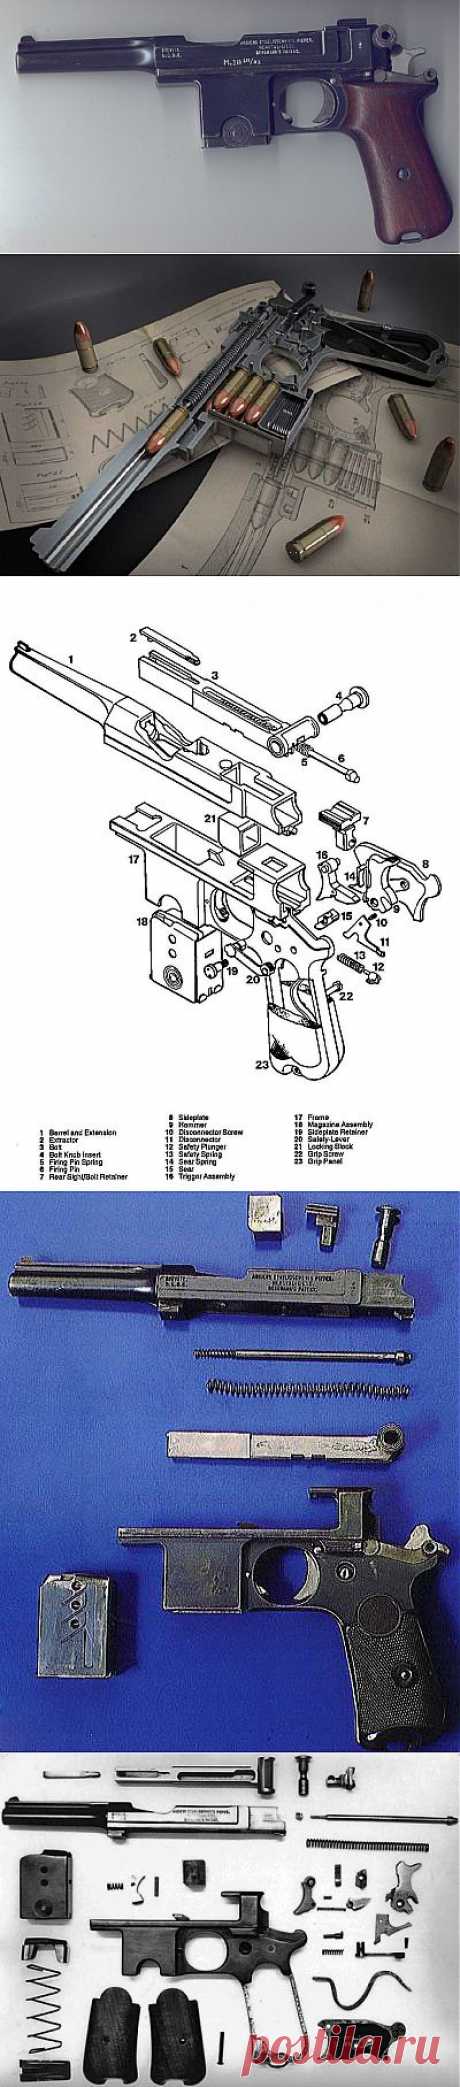 Автоматический пистолет системы Бергман образца 1903–1908 гг., марка «Баярд» | Все об оружии